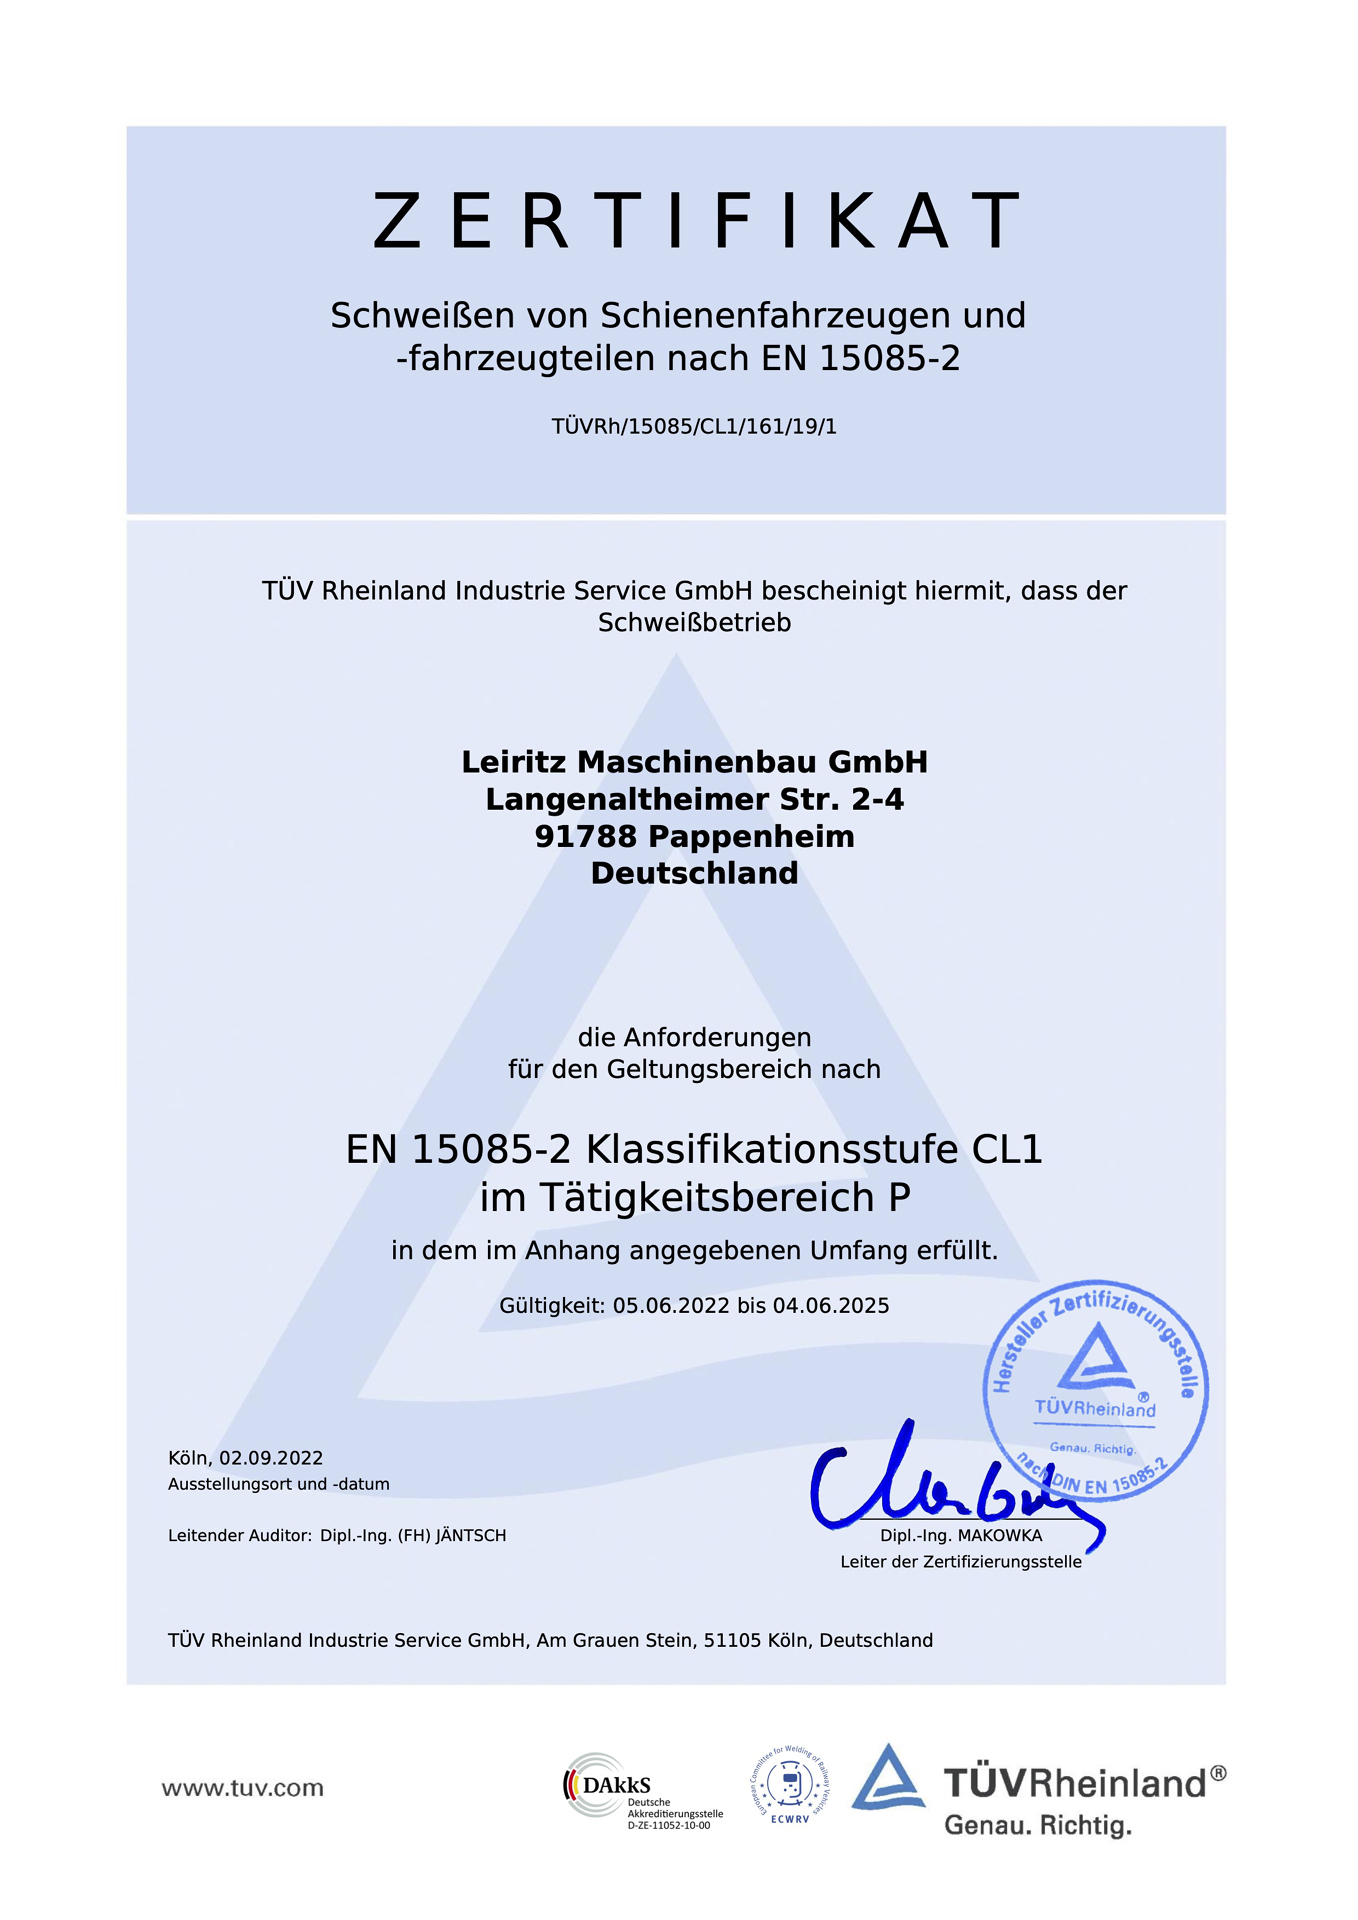 Der Schweißfachbetrieb Leiritz Maschinenbau ist nach EN 15085-2 zertifiziert.